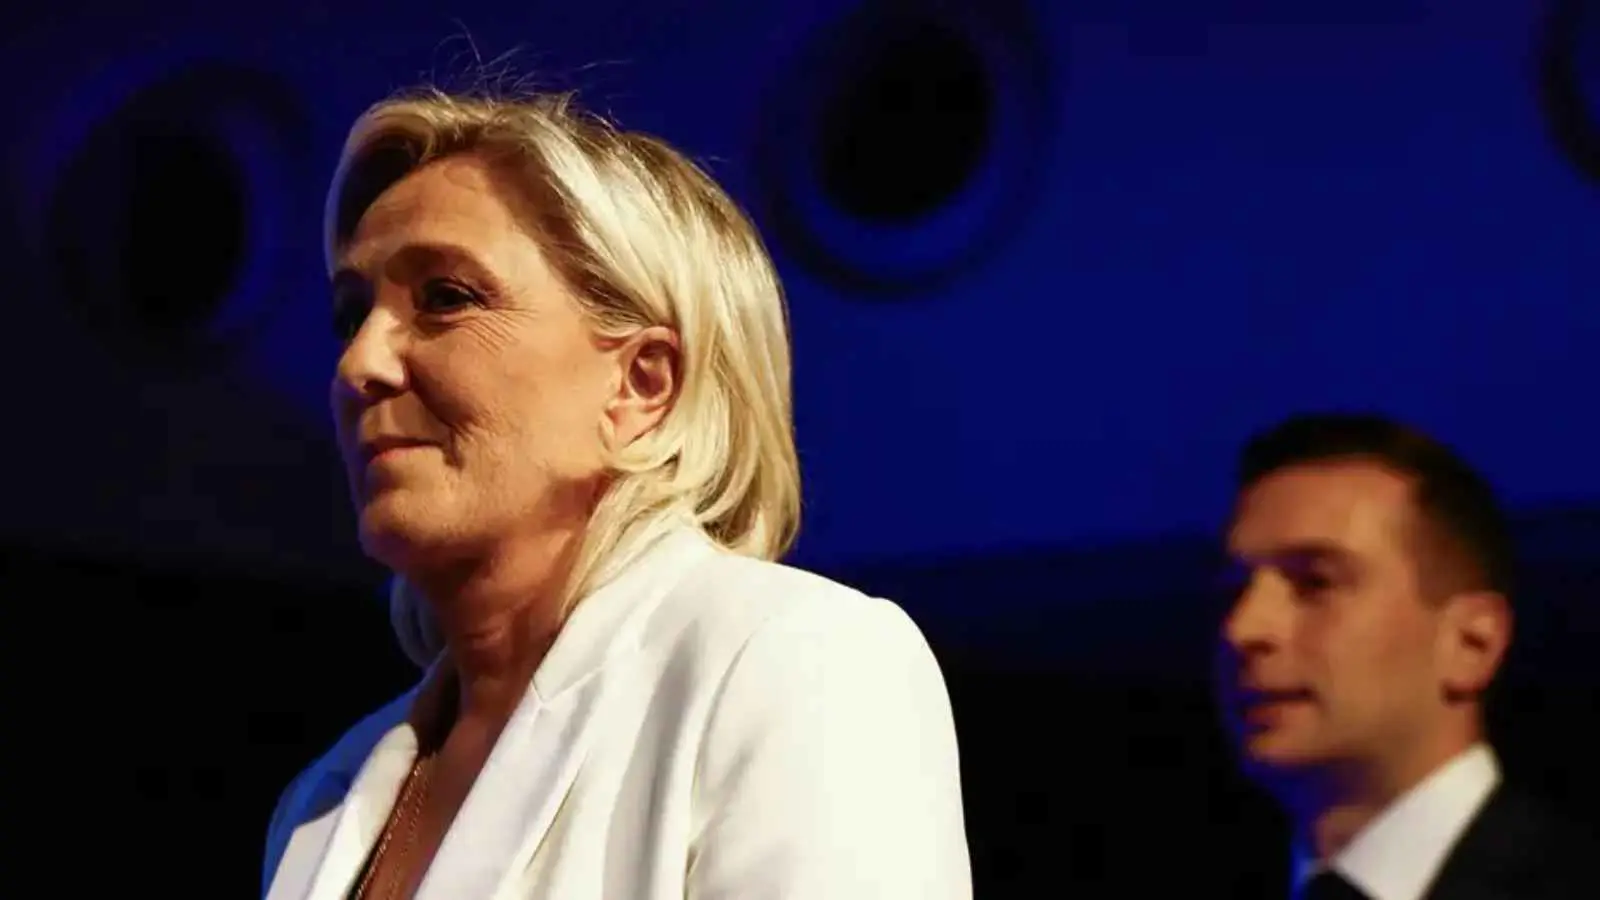 مع فوز "اليمين المتطرف".. "ملفات شائكة" ستعقّد علاقة فرنسا والاتحاد الأوروبي